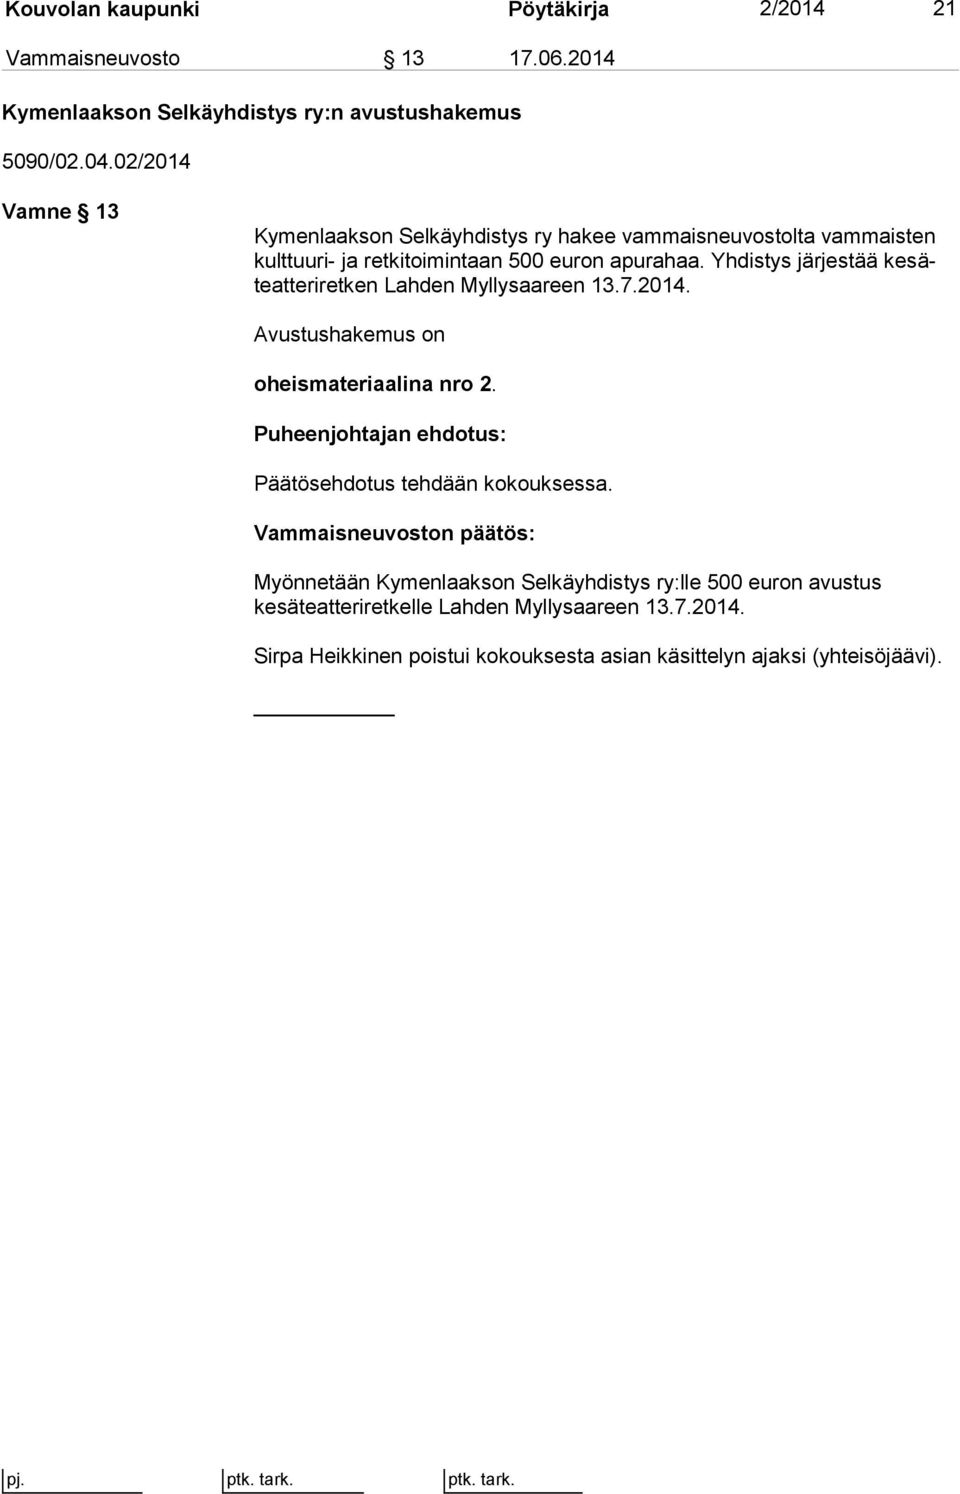 Yhdistys järjestää ke säteat te ri ret ken Lahden Myllysaareen 13.7.2014. Avustushakemus on oheismateriaalina nro 2. Päätösehdotus tehdään kokouksessa.